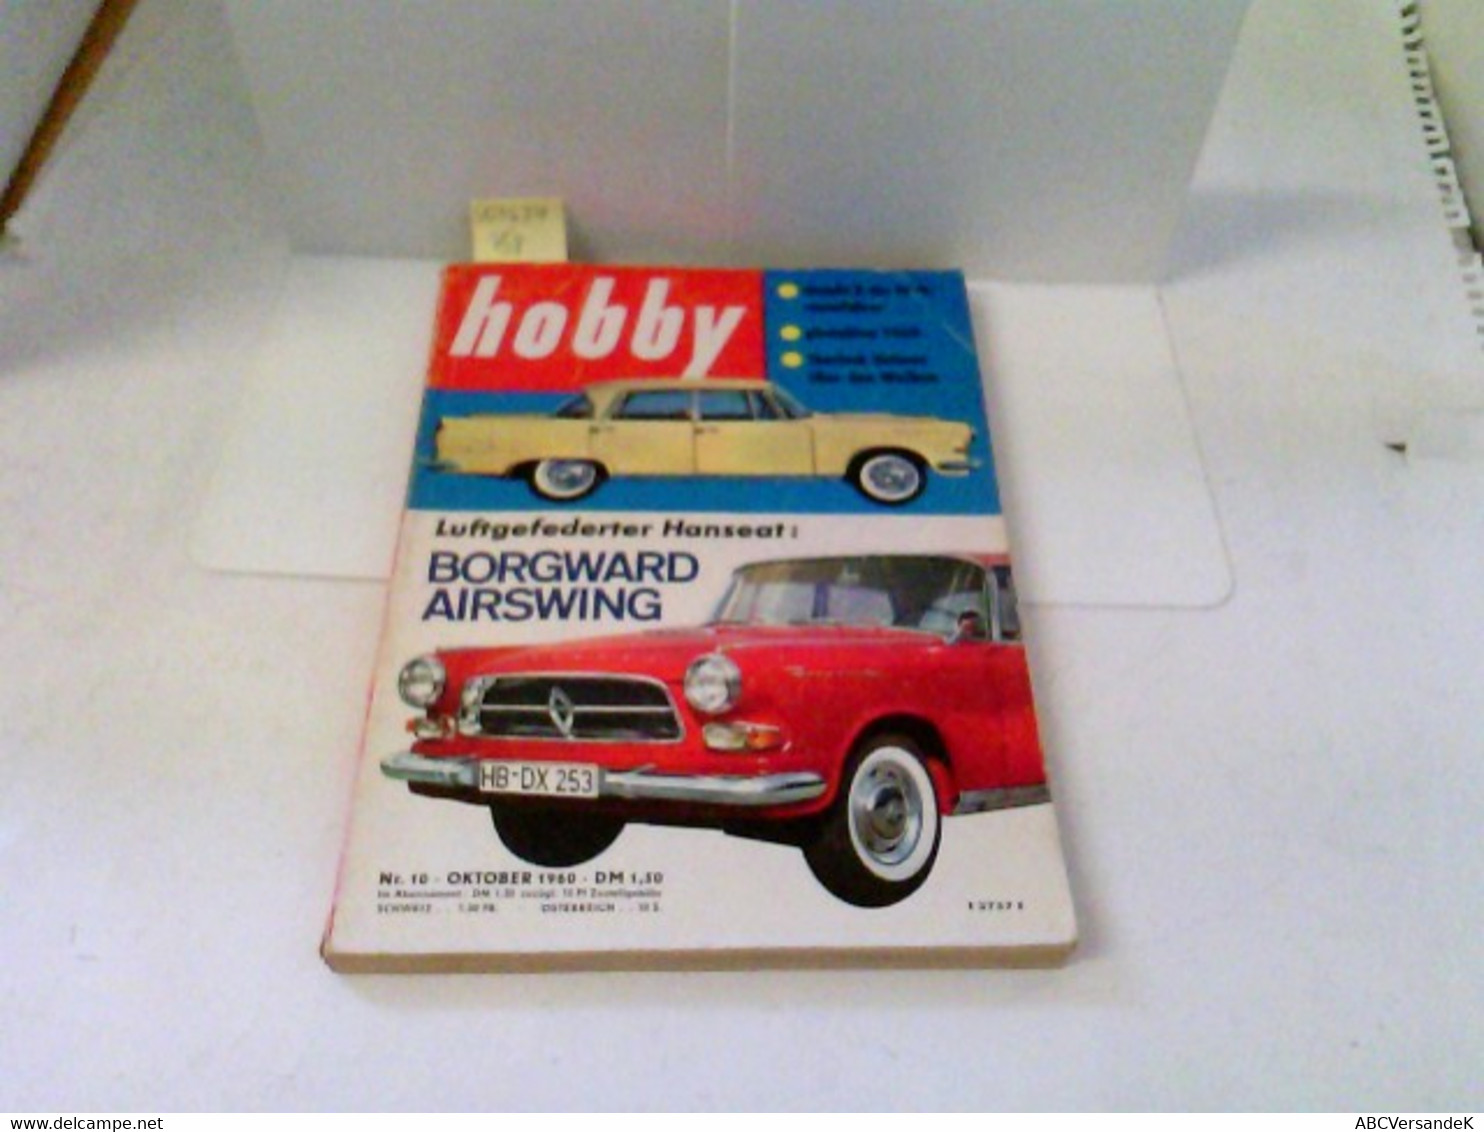 Hobby - Das Magazin Der Technik - Heft 1960/10 - Luftgefederter Hanseat: Borgward Airswing U.v.m. - Technique